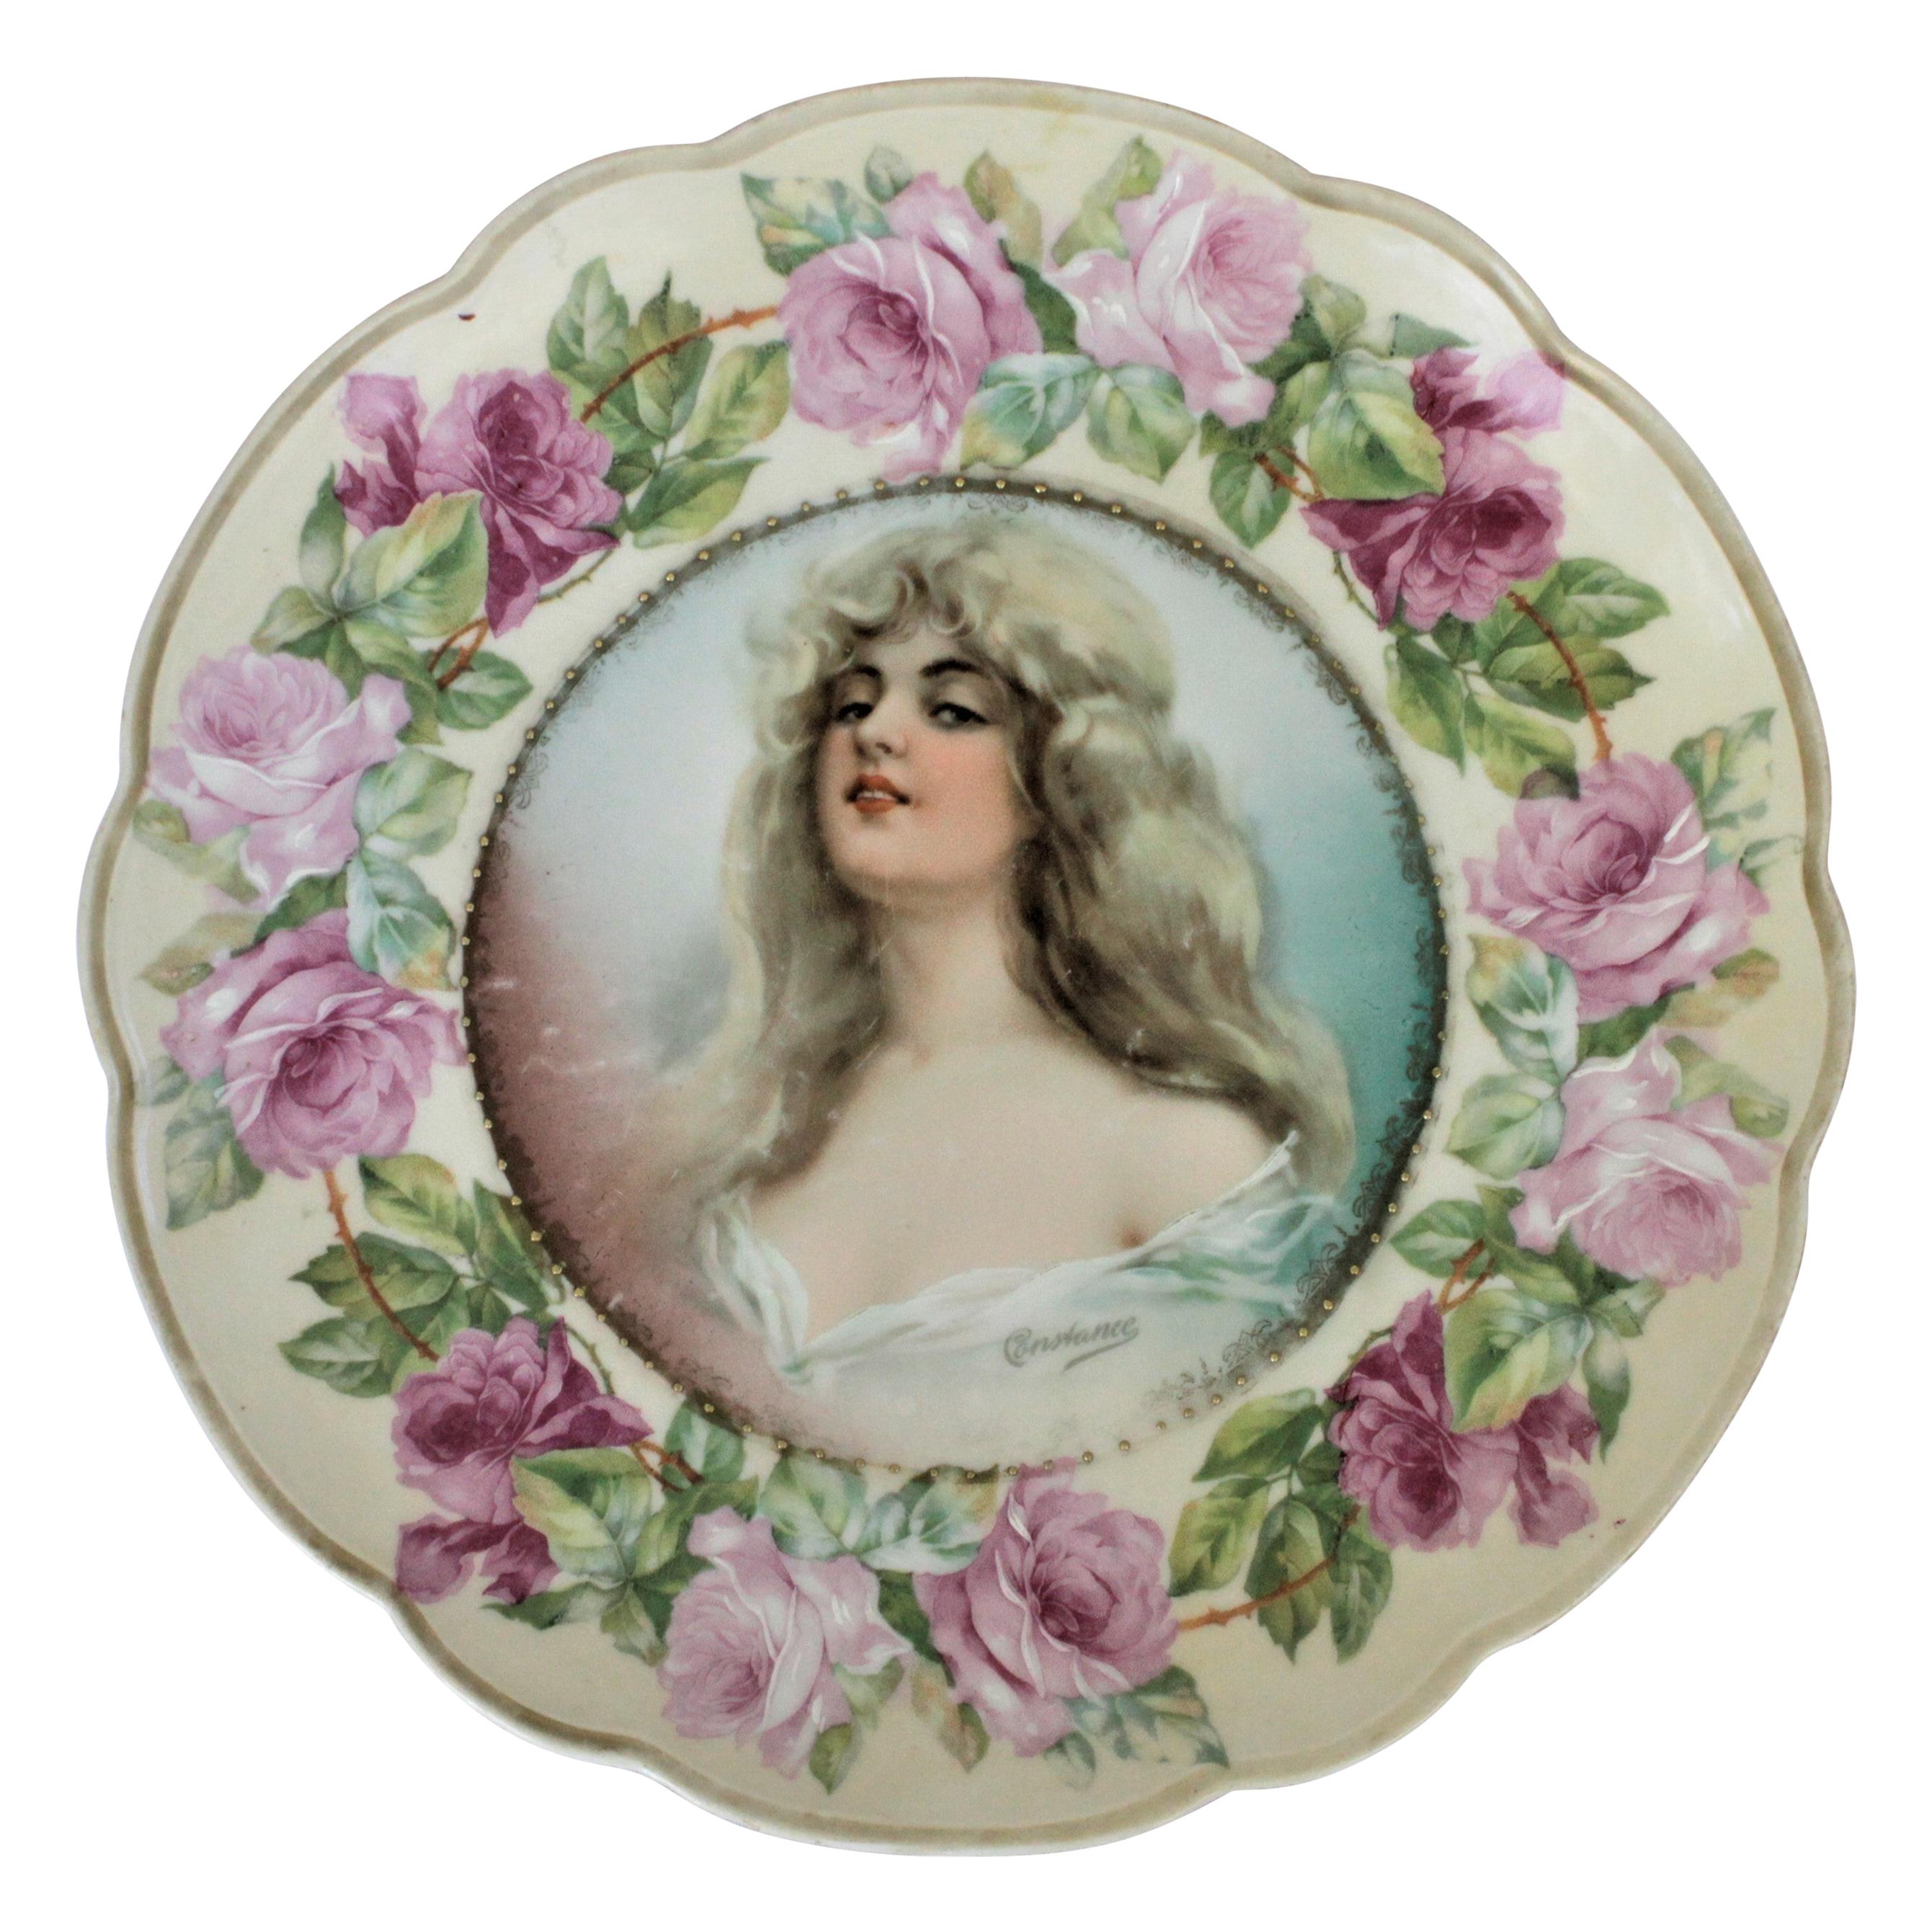 Antique Porcelain MZ Austria Portrait or Cabinet Plate signed "Constance" For Sale